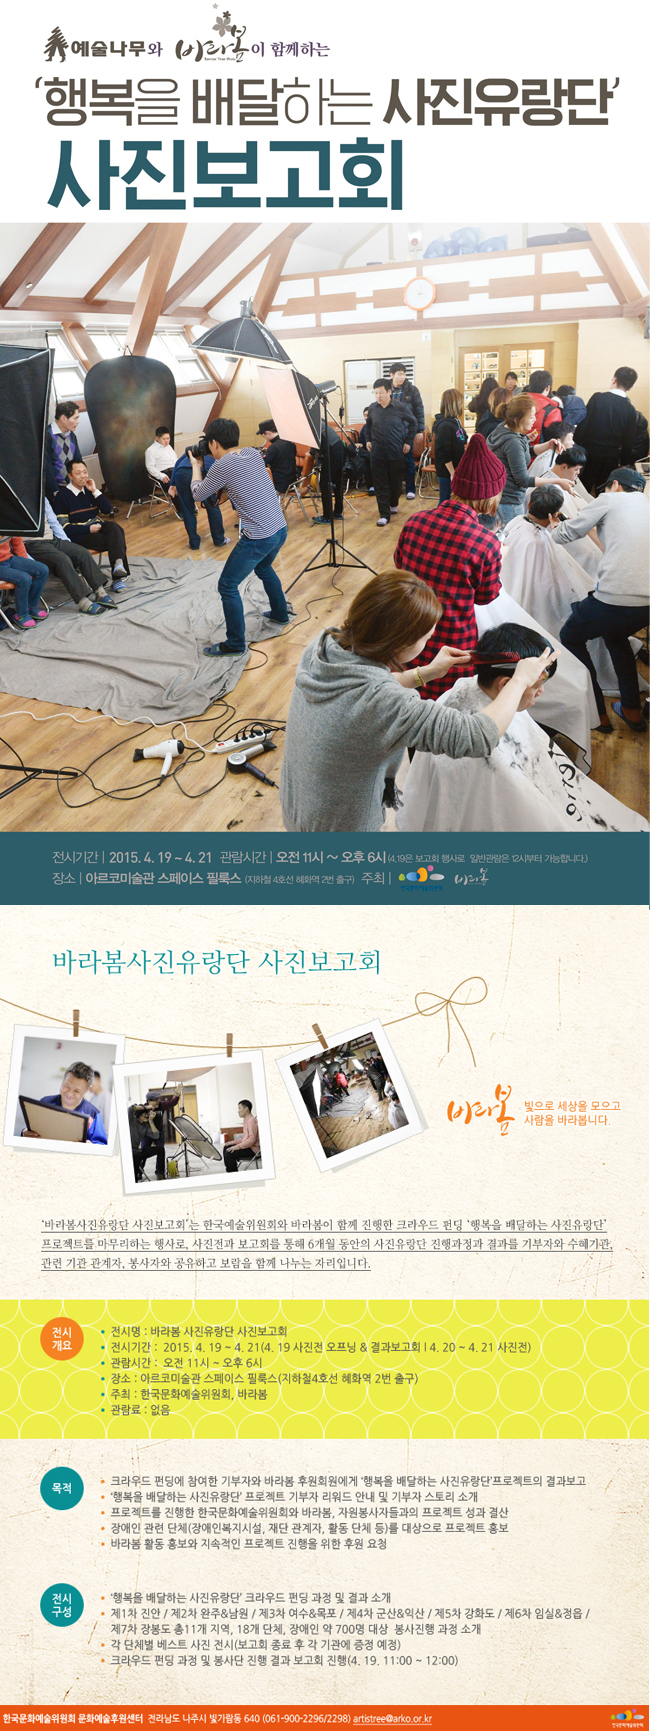 [크라우드펀딩 기획모금] 행복을 배달하는 사진유랑단 전시회 개최